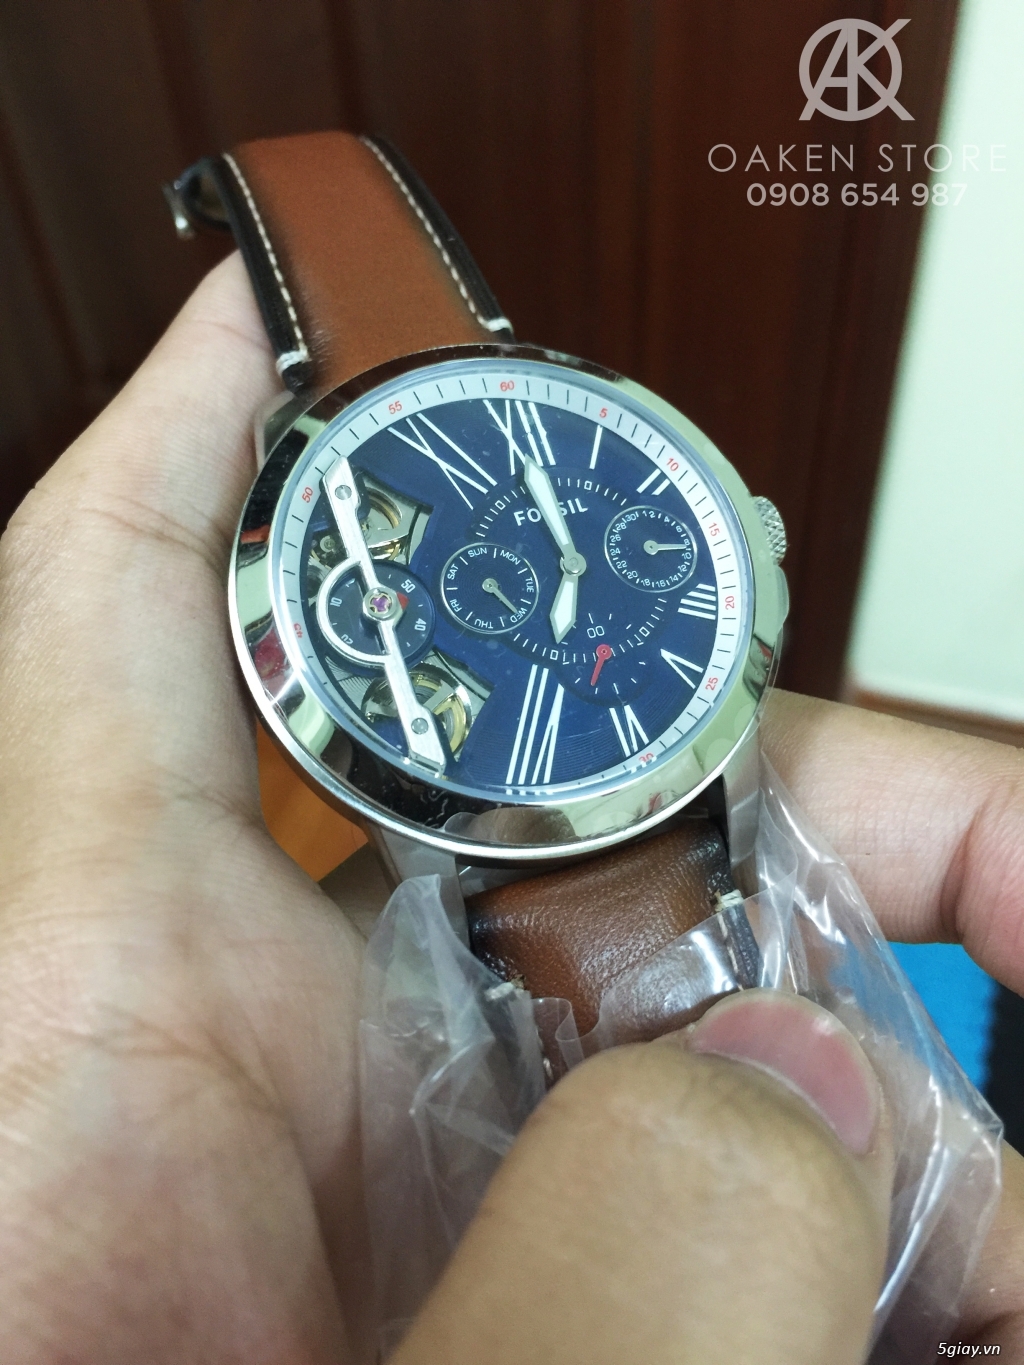 Oaken Store - Đồng hồ chính hãng xách tay giá tốt - 7